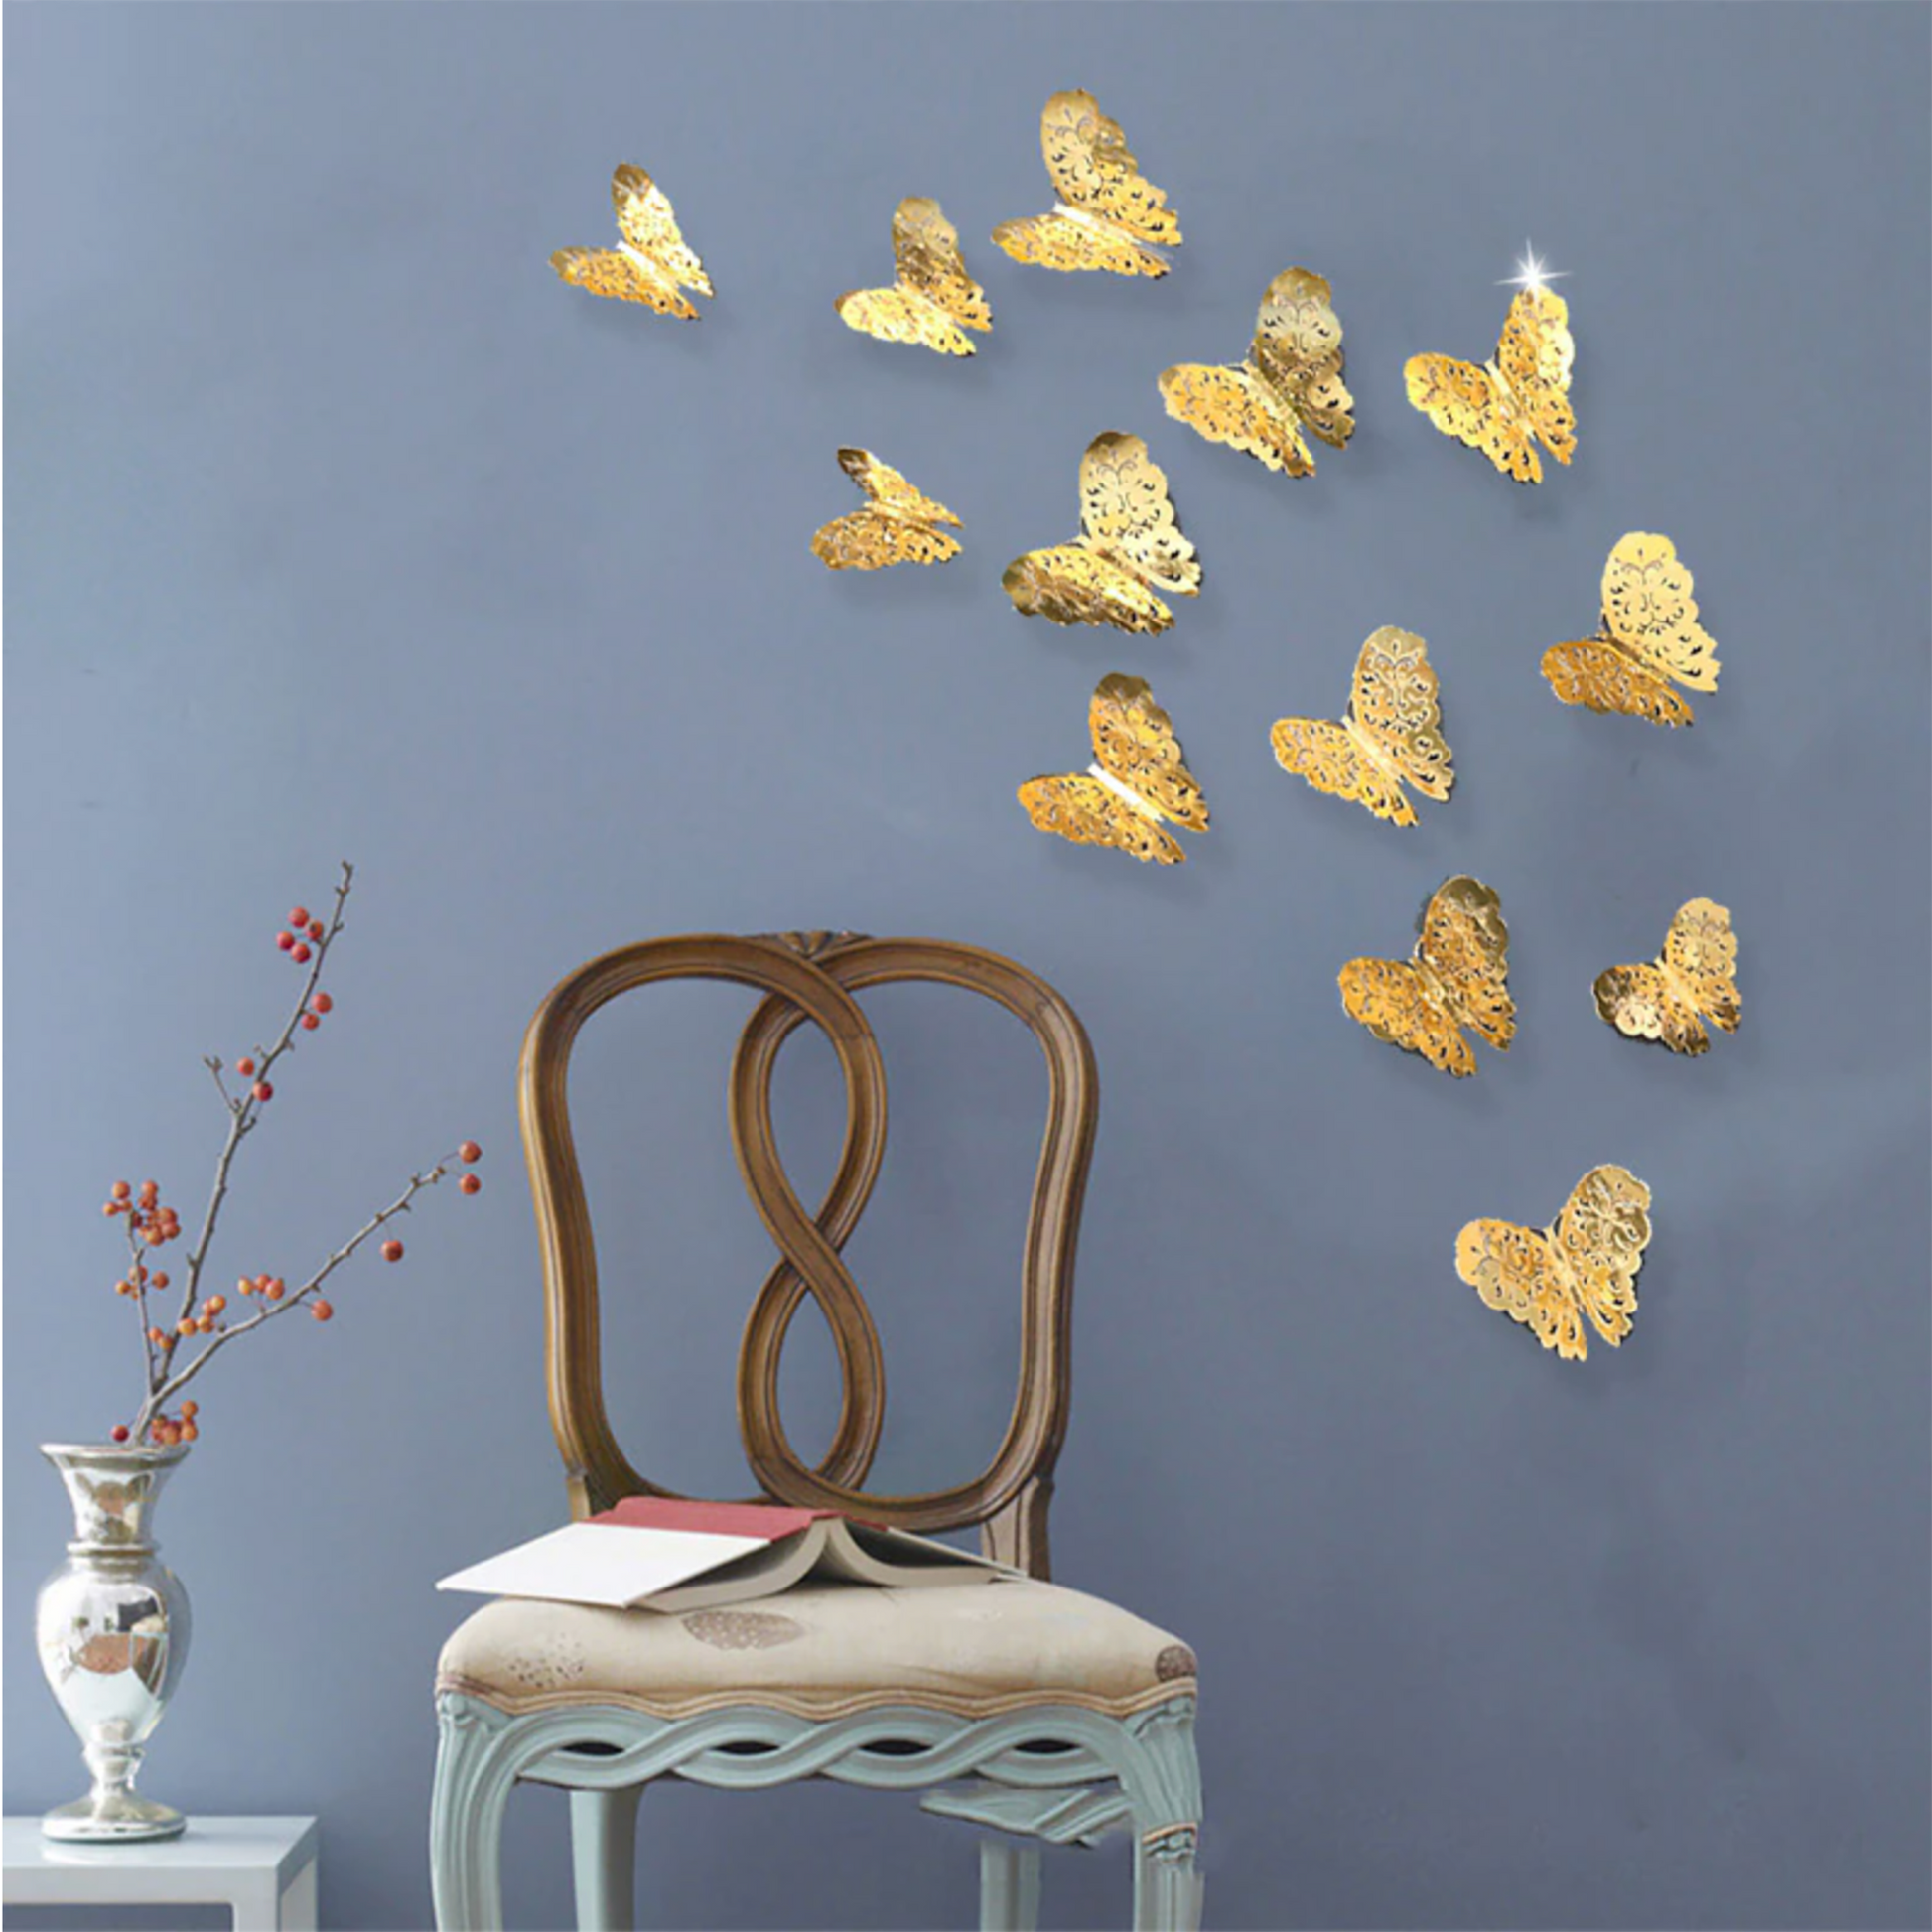 Gold metallic butterfly wall art decor 